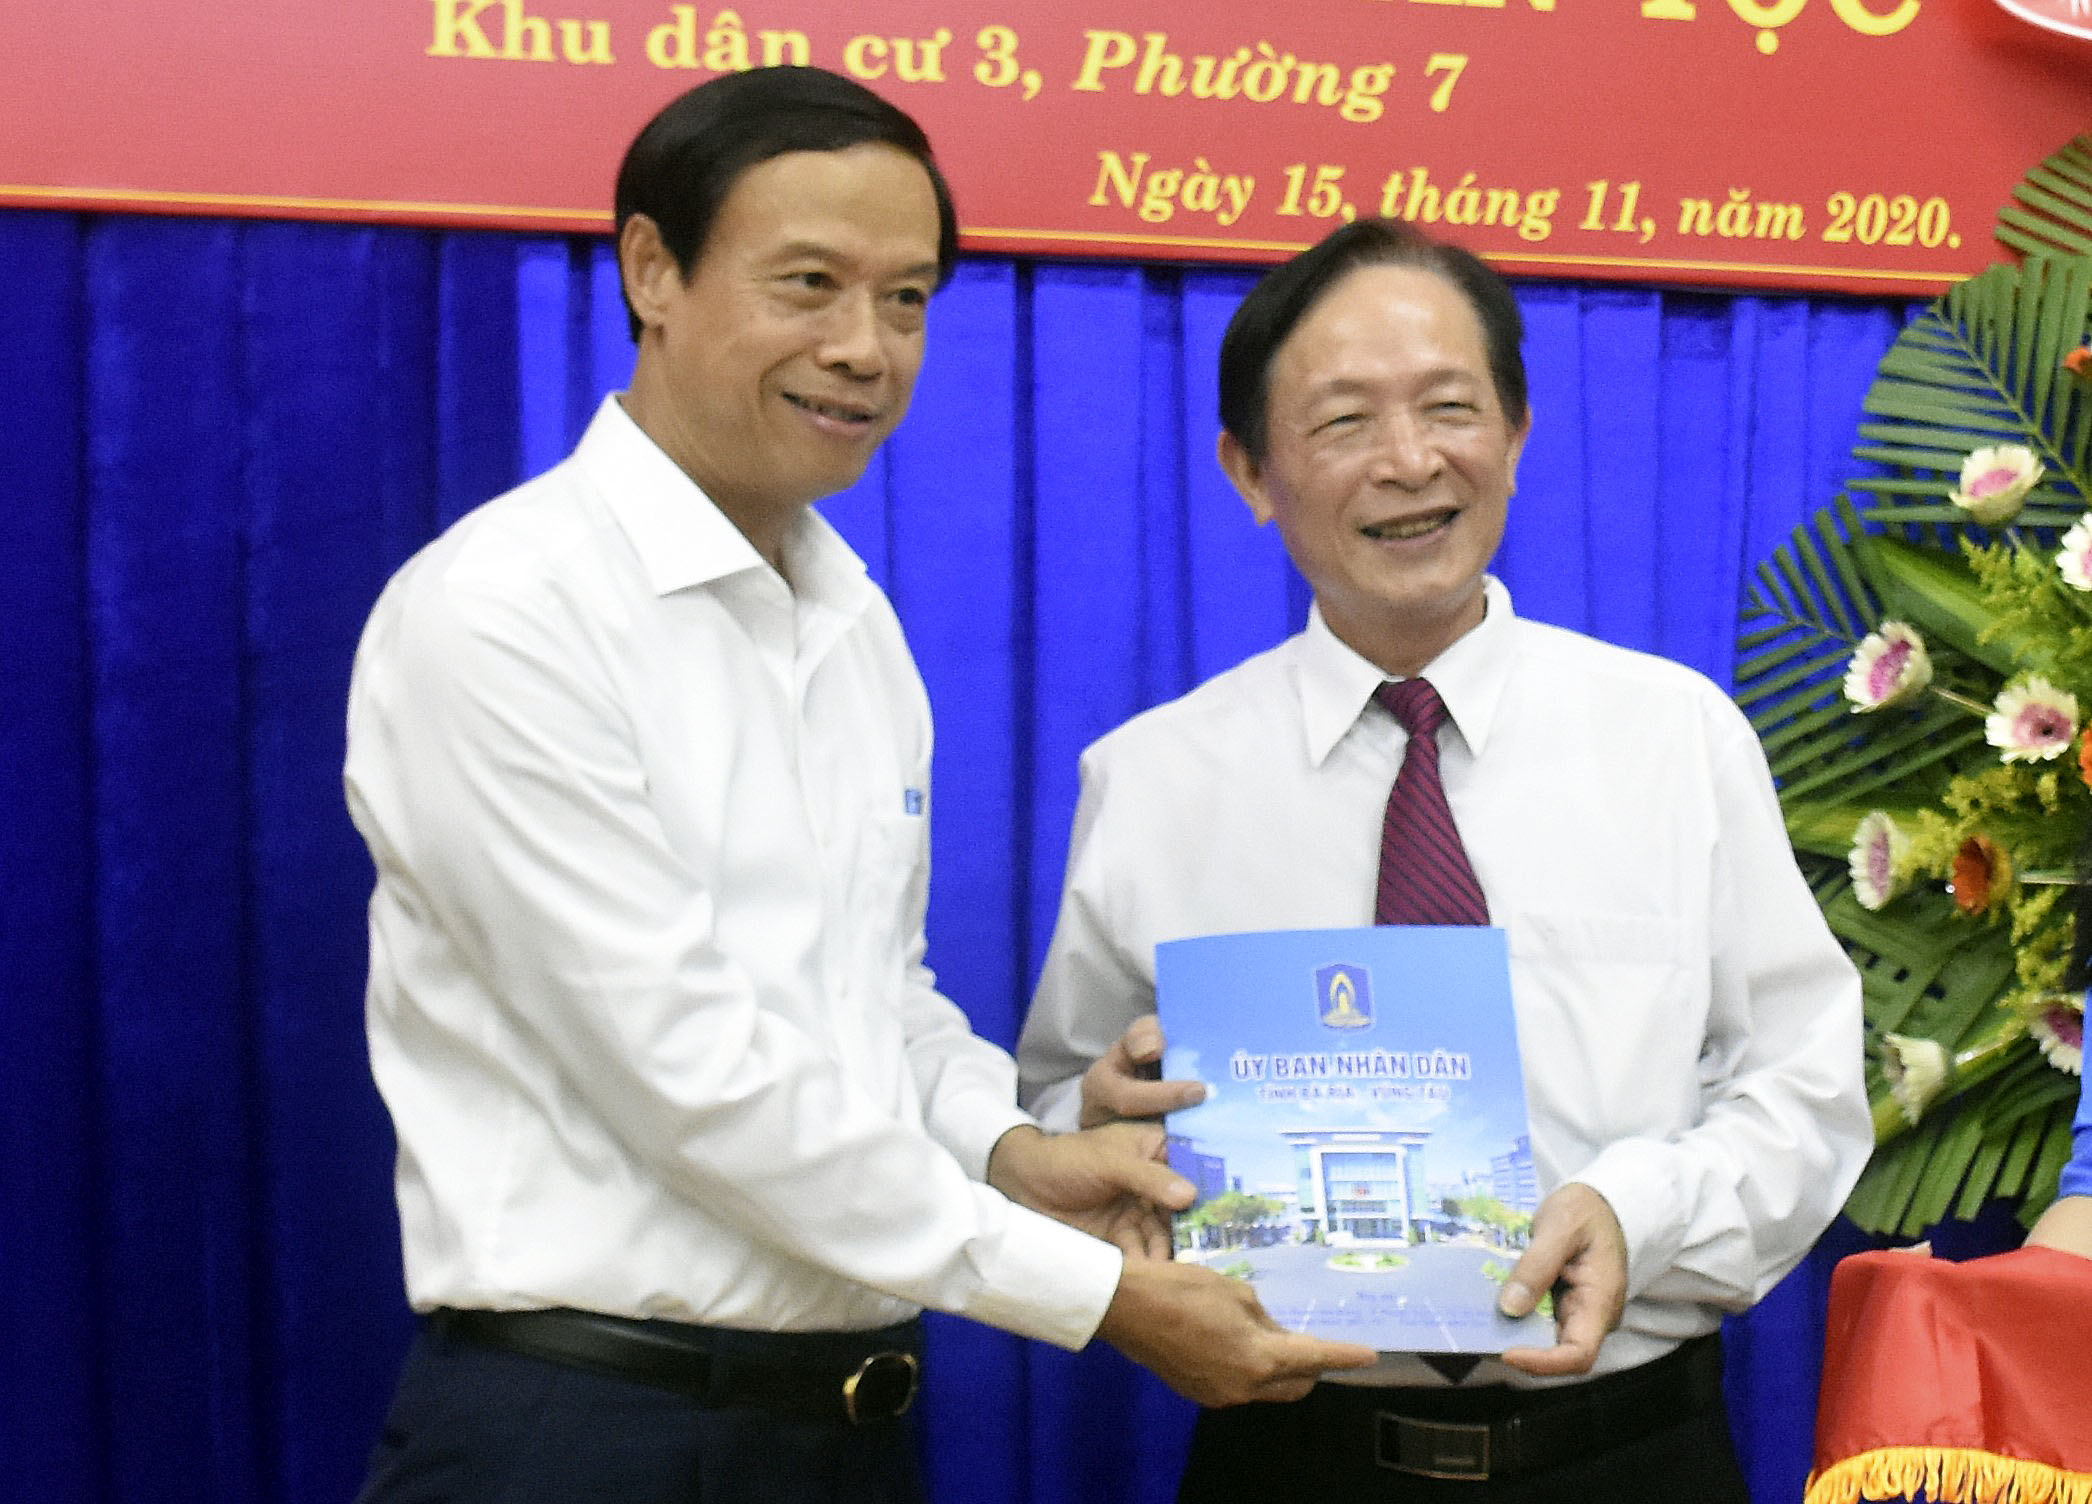 Ông Nguyễn Văn Thọ, Phó Bí thư Tỉnh ủy, Chủ tịch UBND tỉnh trao quà cho đại diện Khu phố 3, Phường 7, TP.Vũng Tàu.